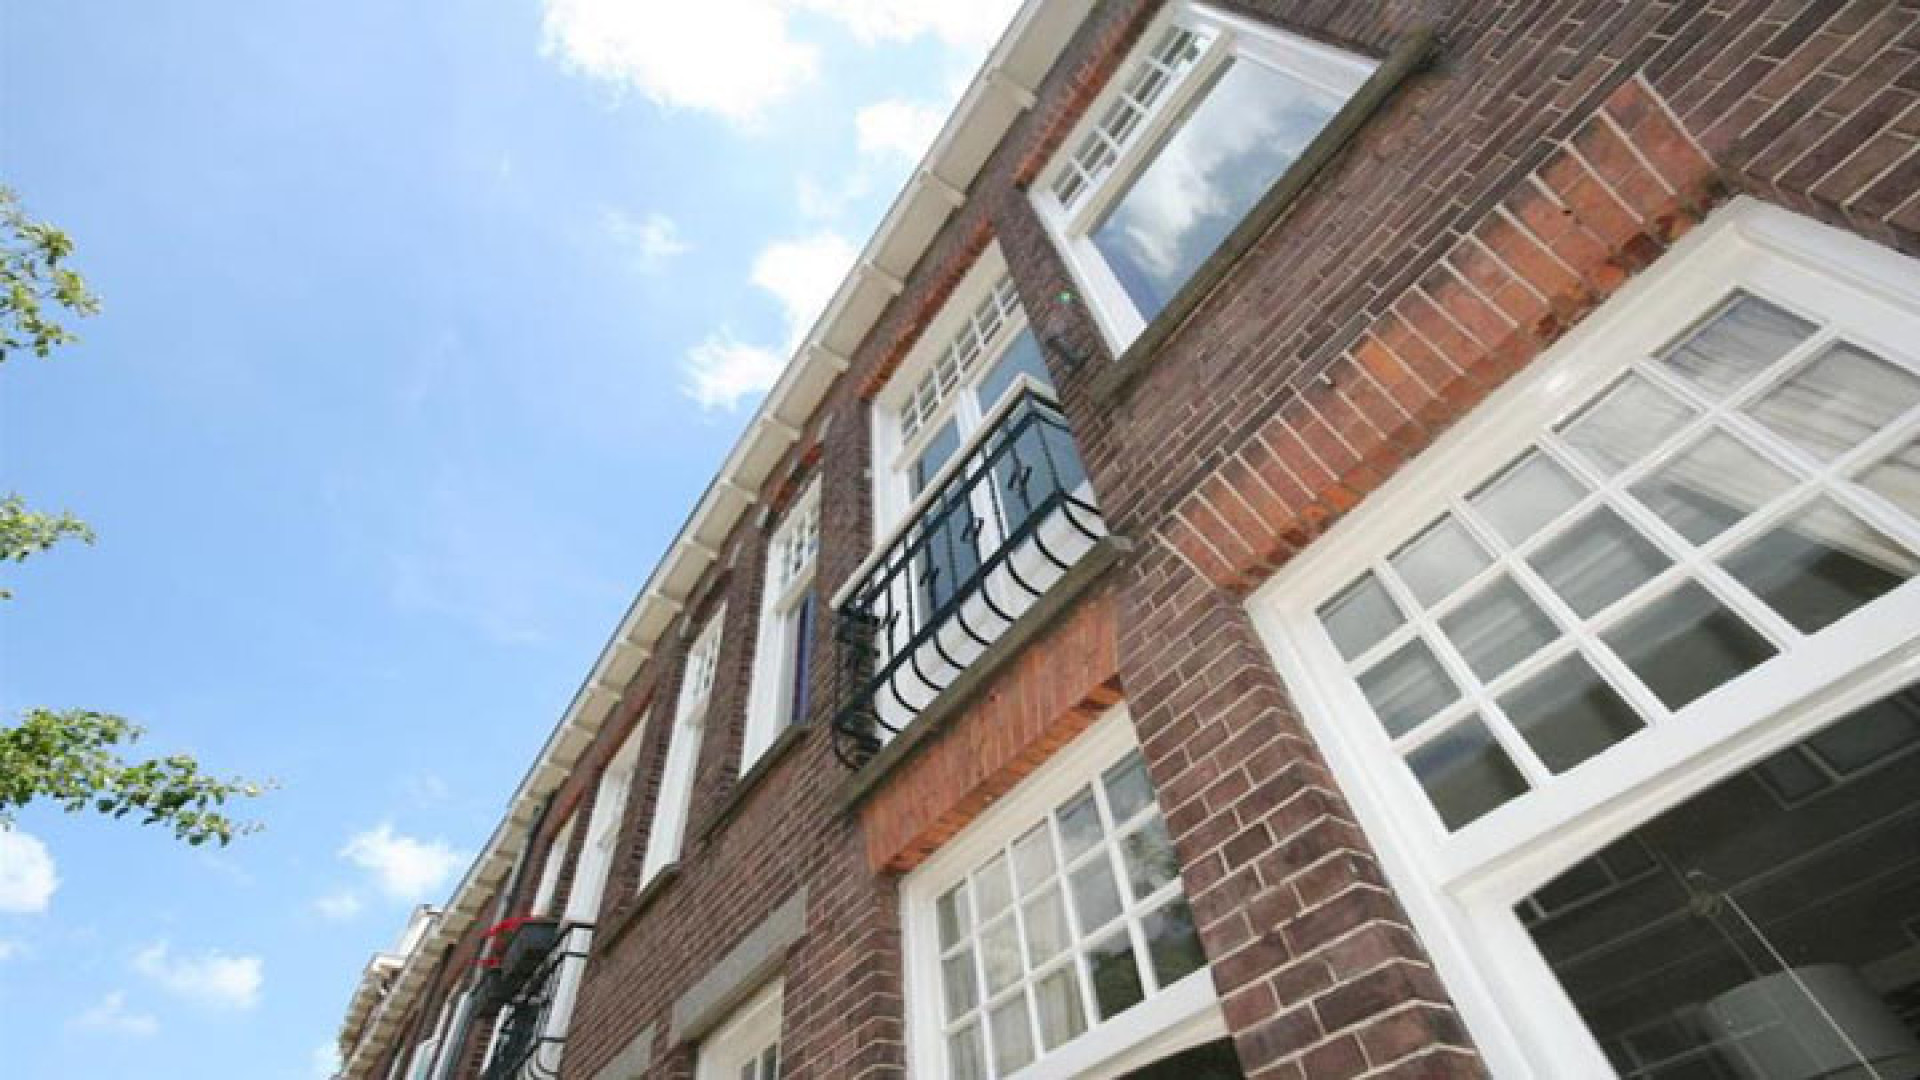 Binnenkijken in prachtige Utrechtse herenhuis van Gouden Kalf winnaar Fedja van Huet. Zie foto's 18